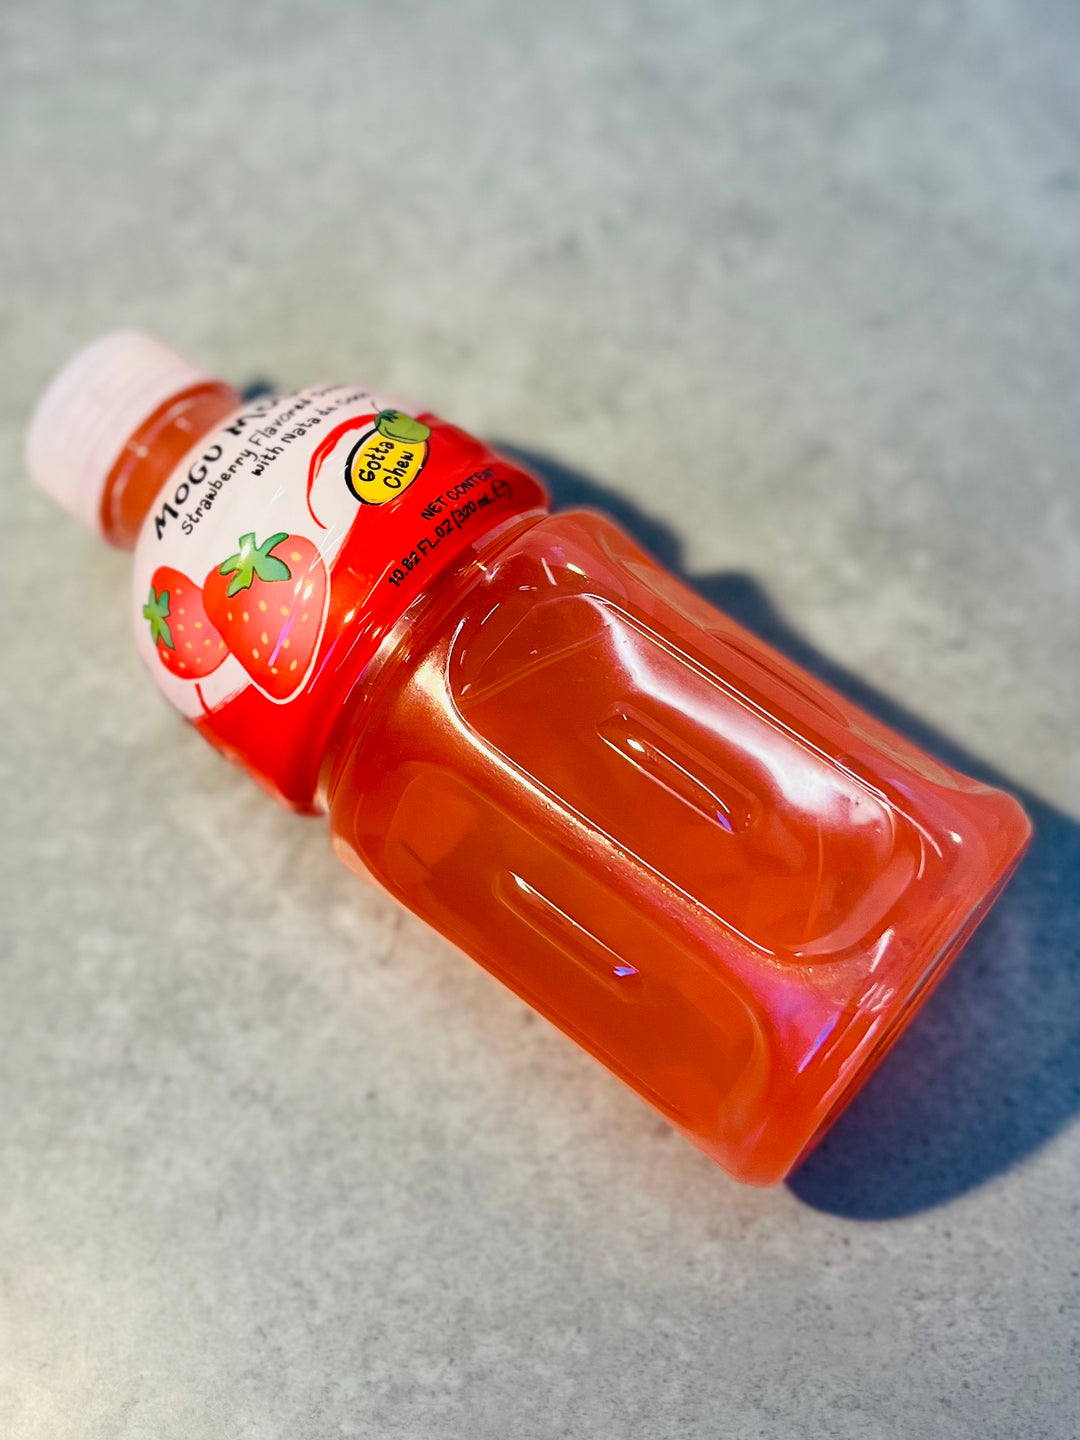 Mogu Mogu Strawberry Flavored Drink 320ml